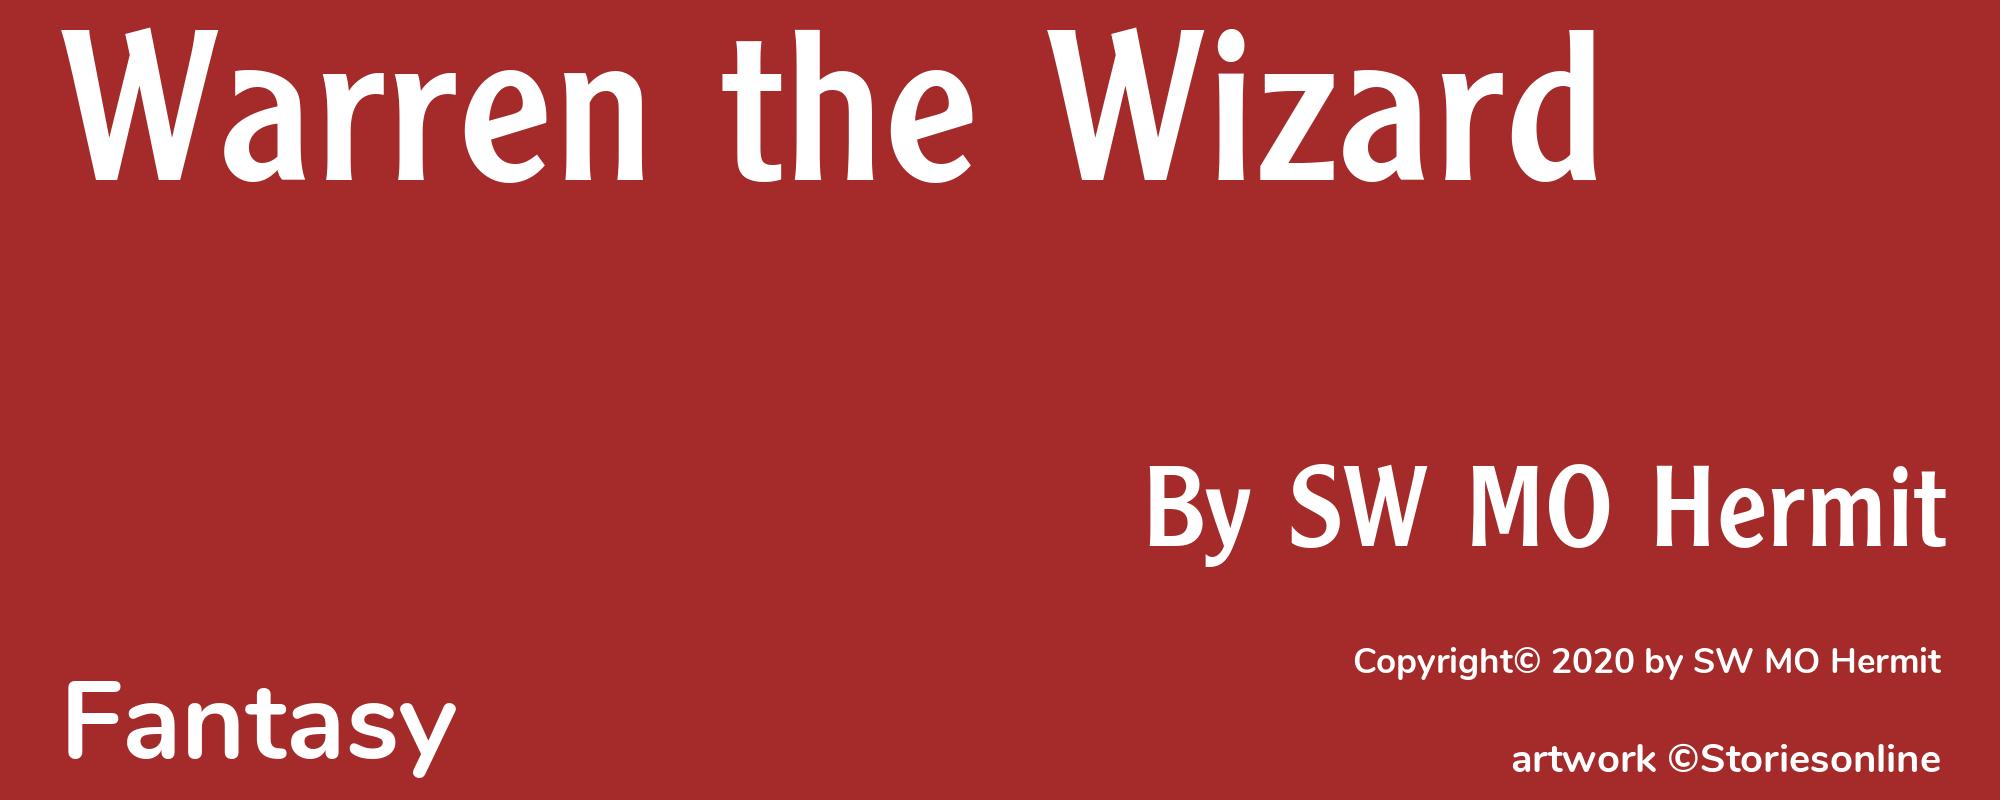 Warren the Wizard - Cover